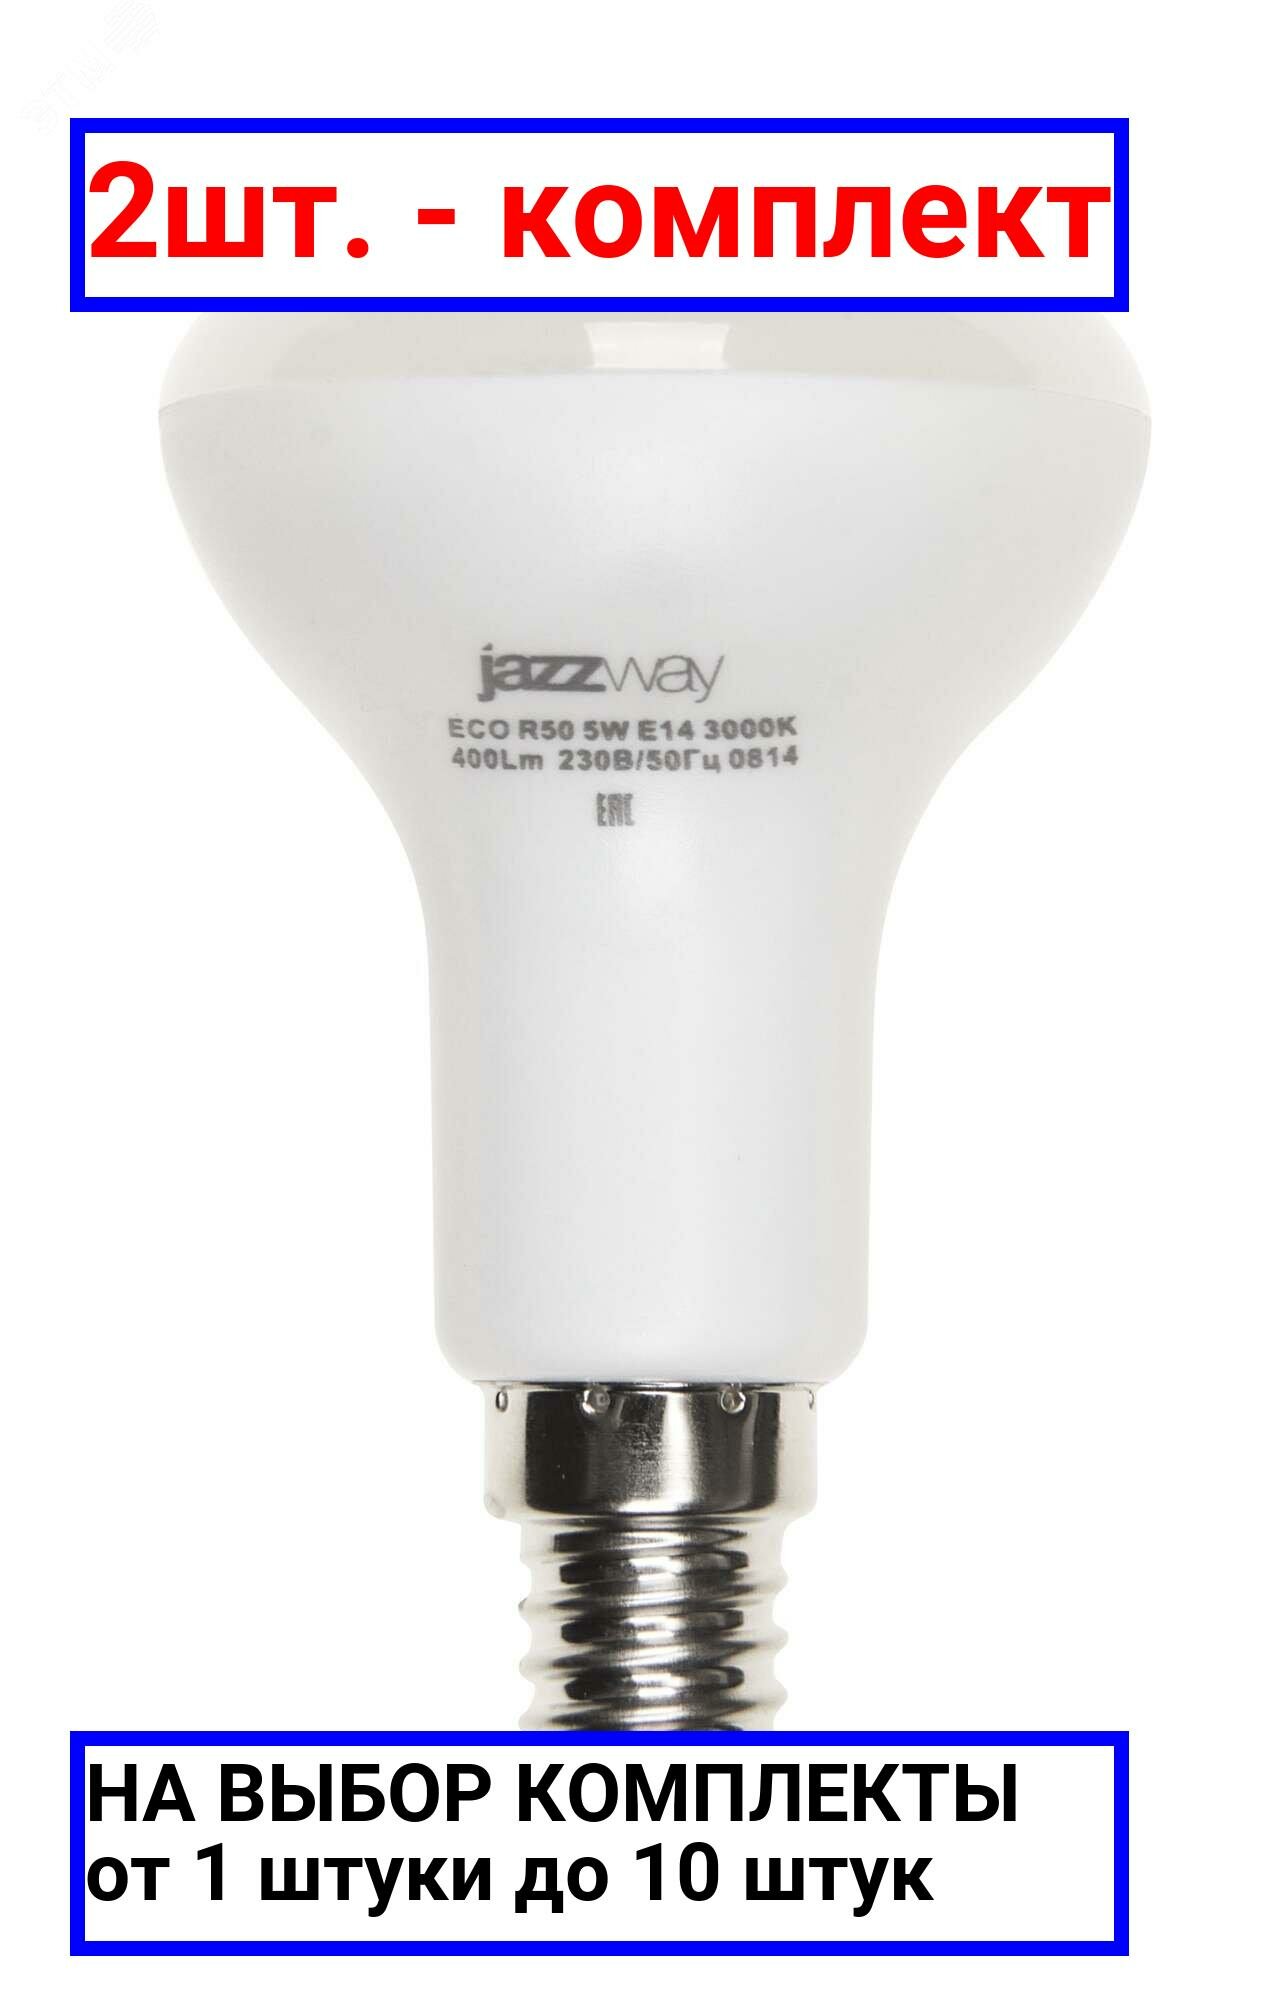 2шт. - Лампа светодиодная рефлекторная LED 5Вт R50 E14 400Лм белый 230V/50Hz ECO / JazzWay; арт. 1037046A; оригинал / - комплект 2шт